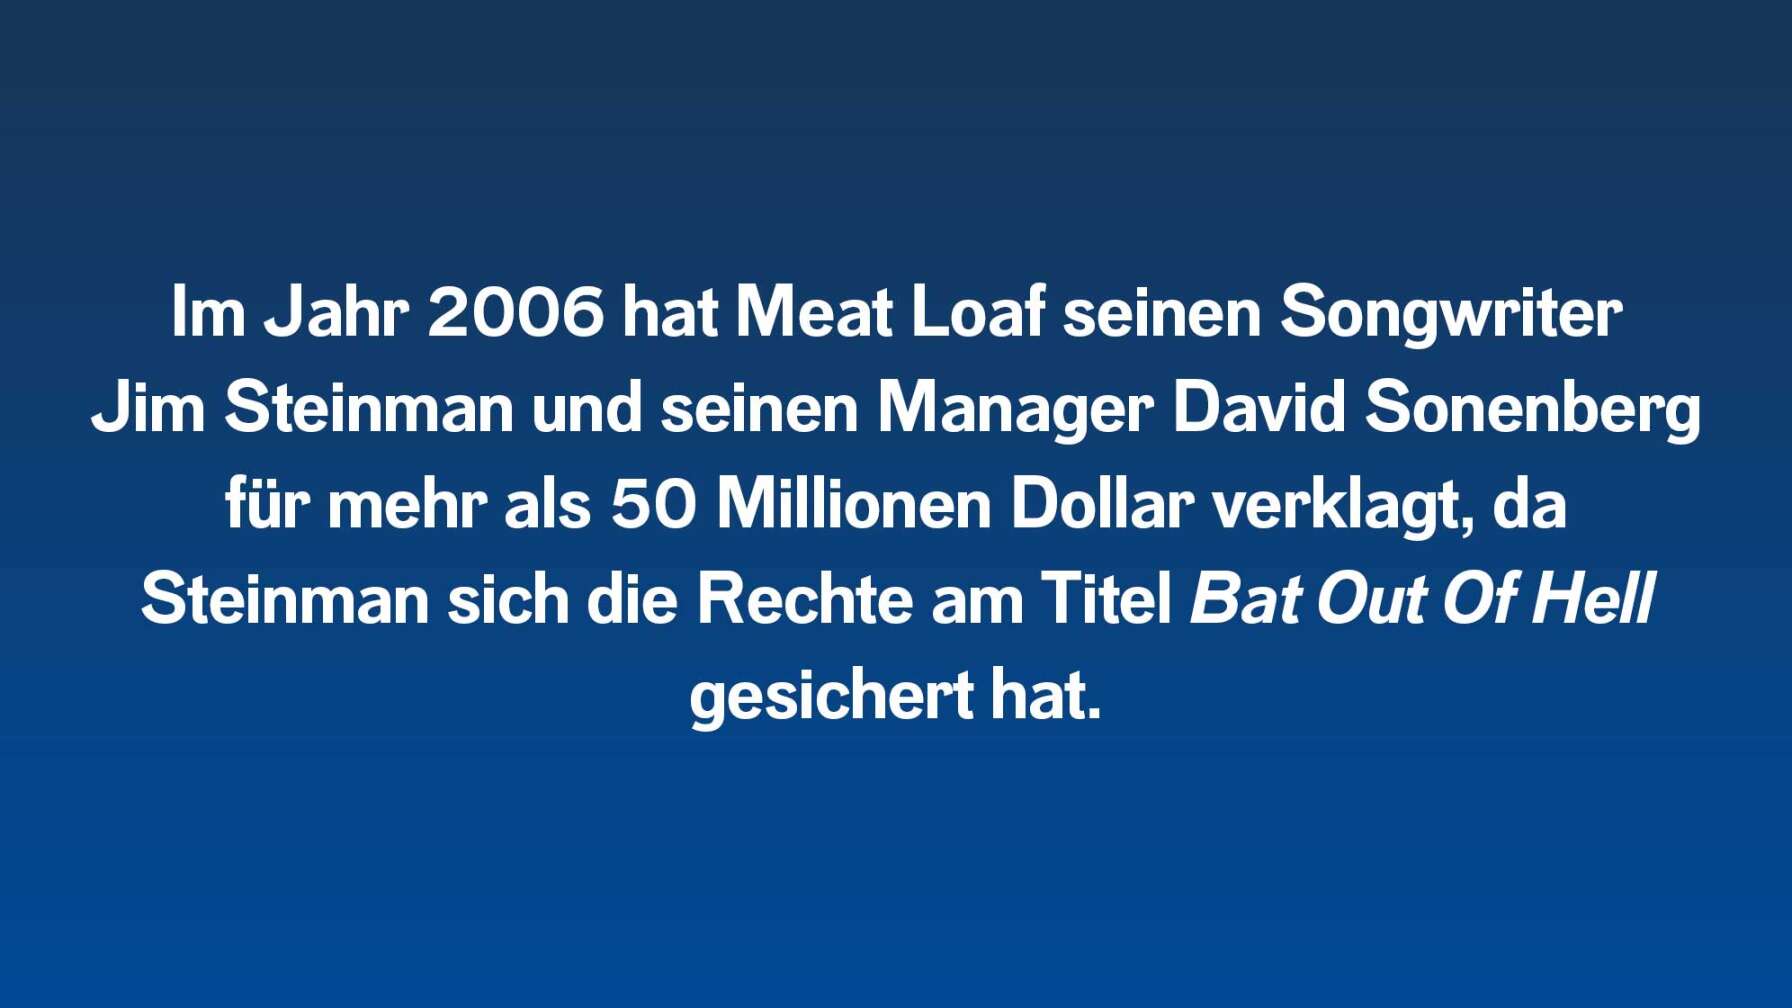 Im Jahr 2006 hat Meat Loaf seinen Songwriter Jim Steinman und seinen Manager David Sonenberg für mehr als 50 Millionen Dollar verklagt, da Steinman sich die Rechte am Titel Bat Out Of Hell unter anderem für das heutige Musical gesichert hat.